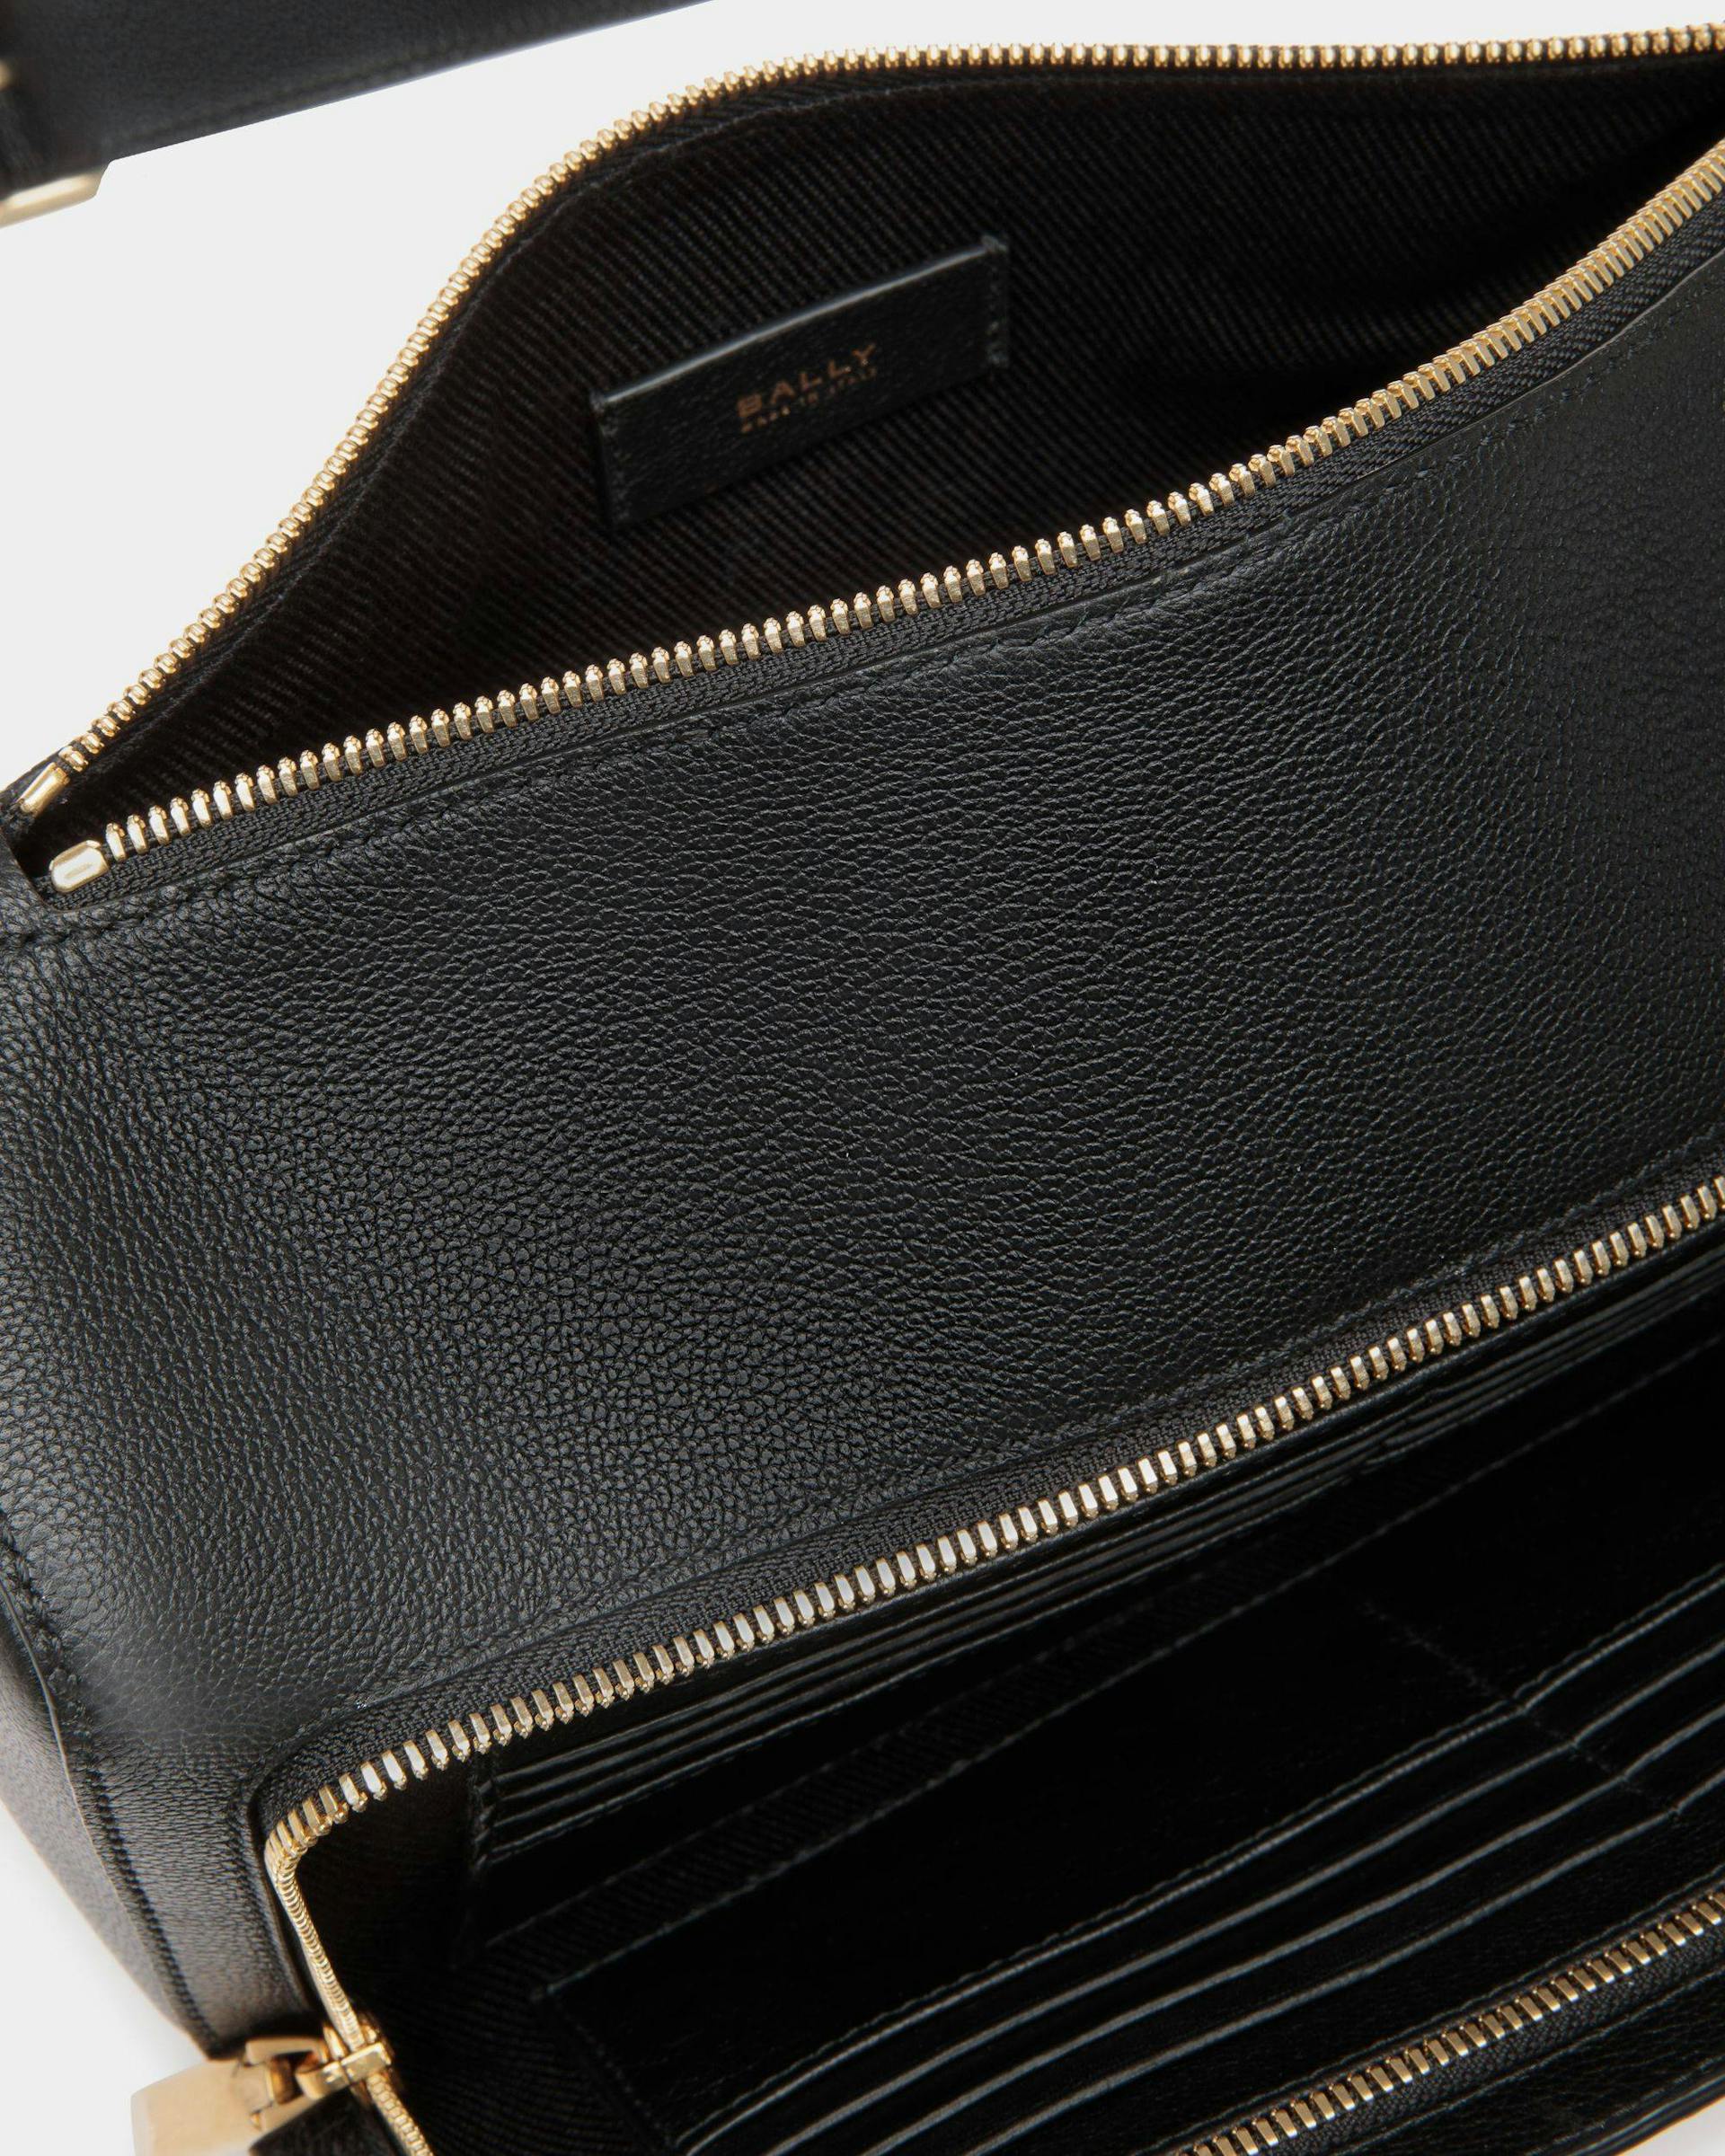 Men's Arkle Belt Bag in Black Grained Leather | Bally | Still Life Open / Inside